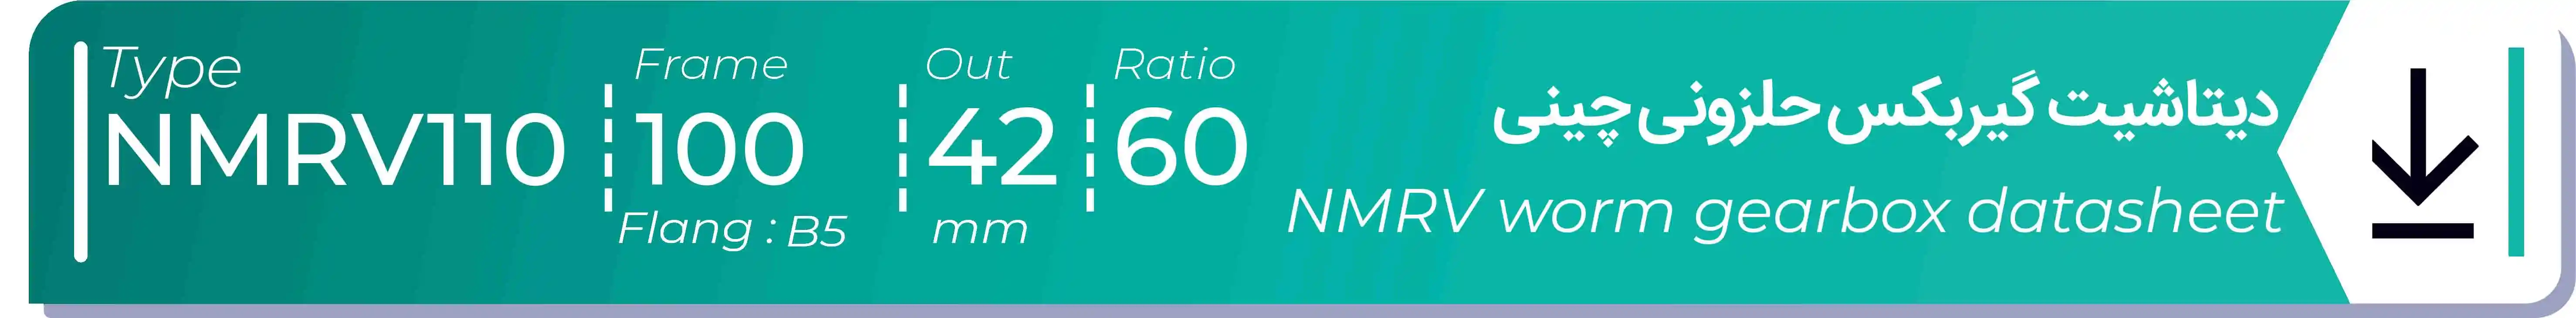  دیتاشیت و مشخصات فنی گیربکس حلزونی چینی   NMRV110  -  با خروجی 42- میلی متر و نسبت60 و فریم 100